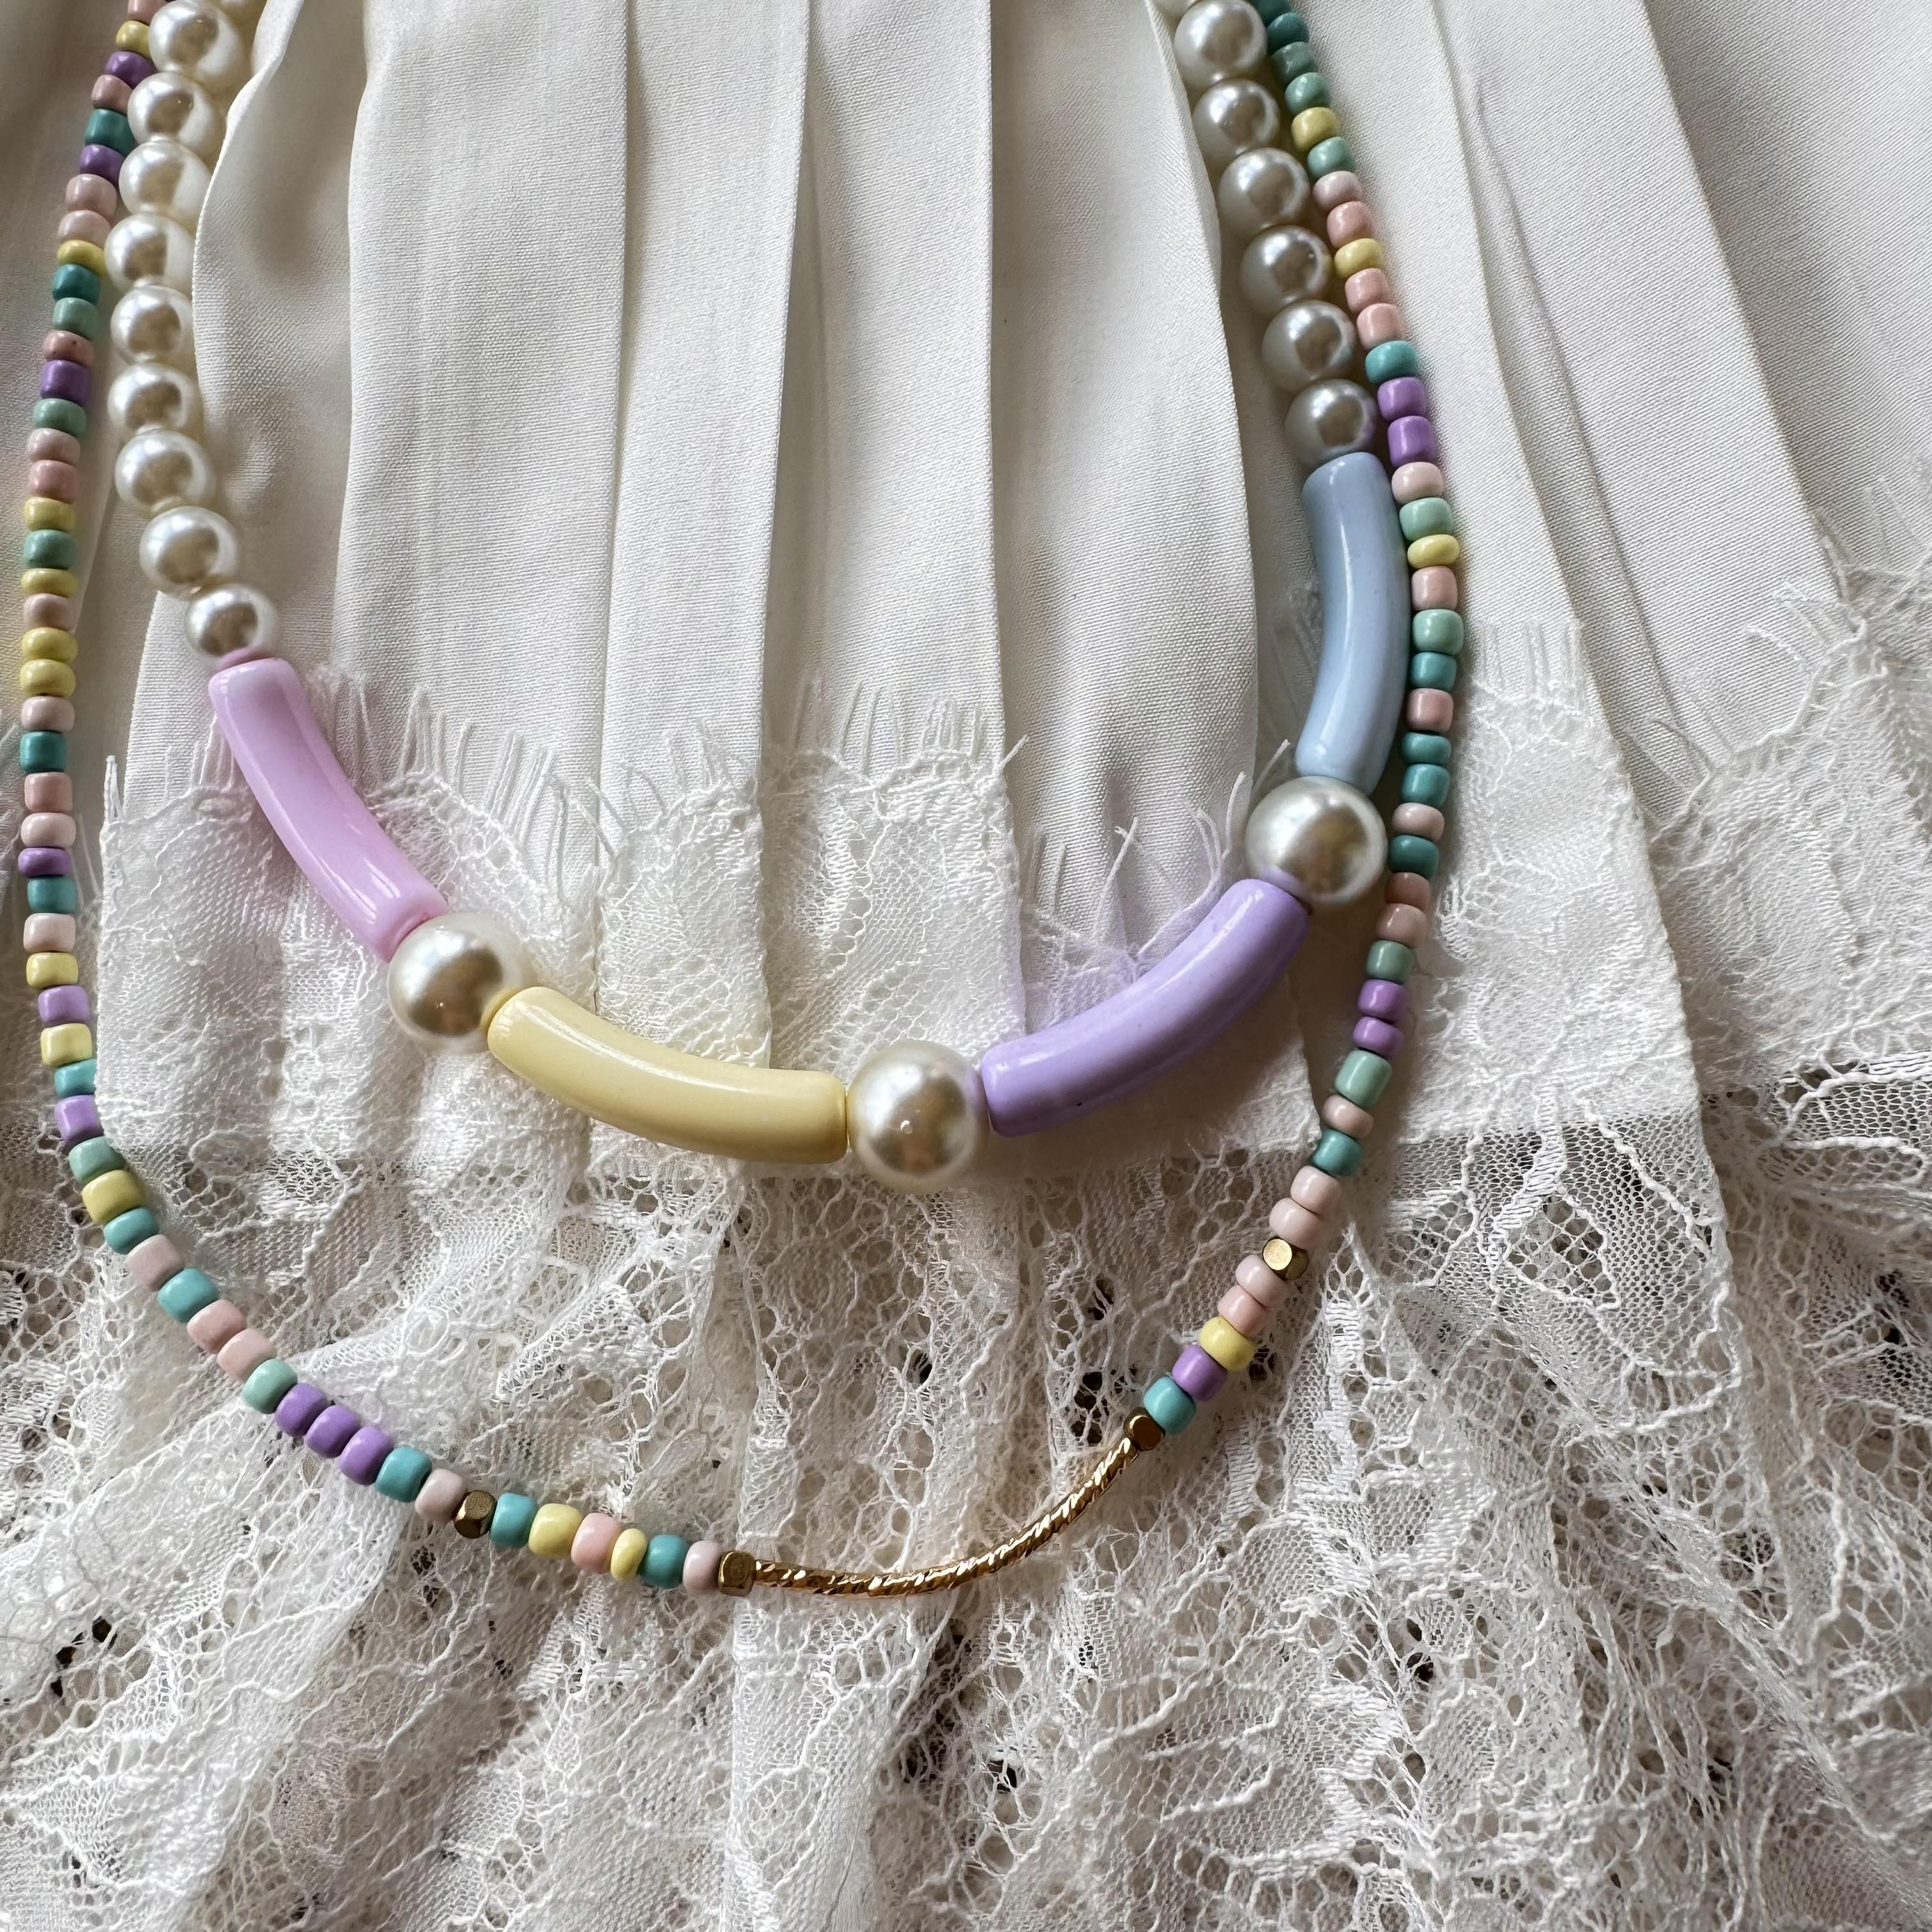 Collier de petites perles colorées - Magic Kingdom